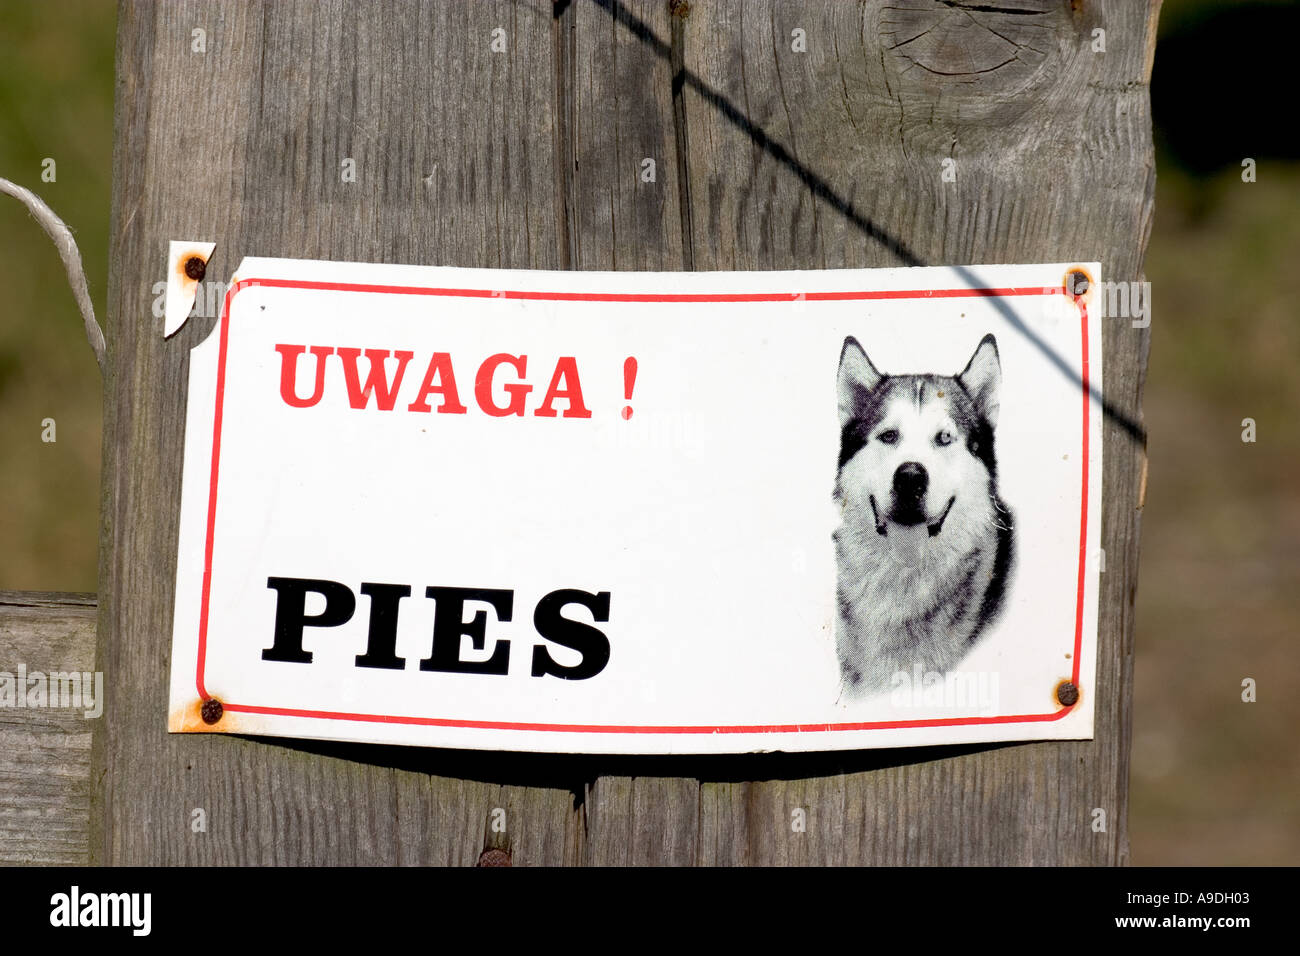 Fate attenzione a un cane vizioso di firmare in polacco. Zawady Polonia Foto Stock